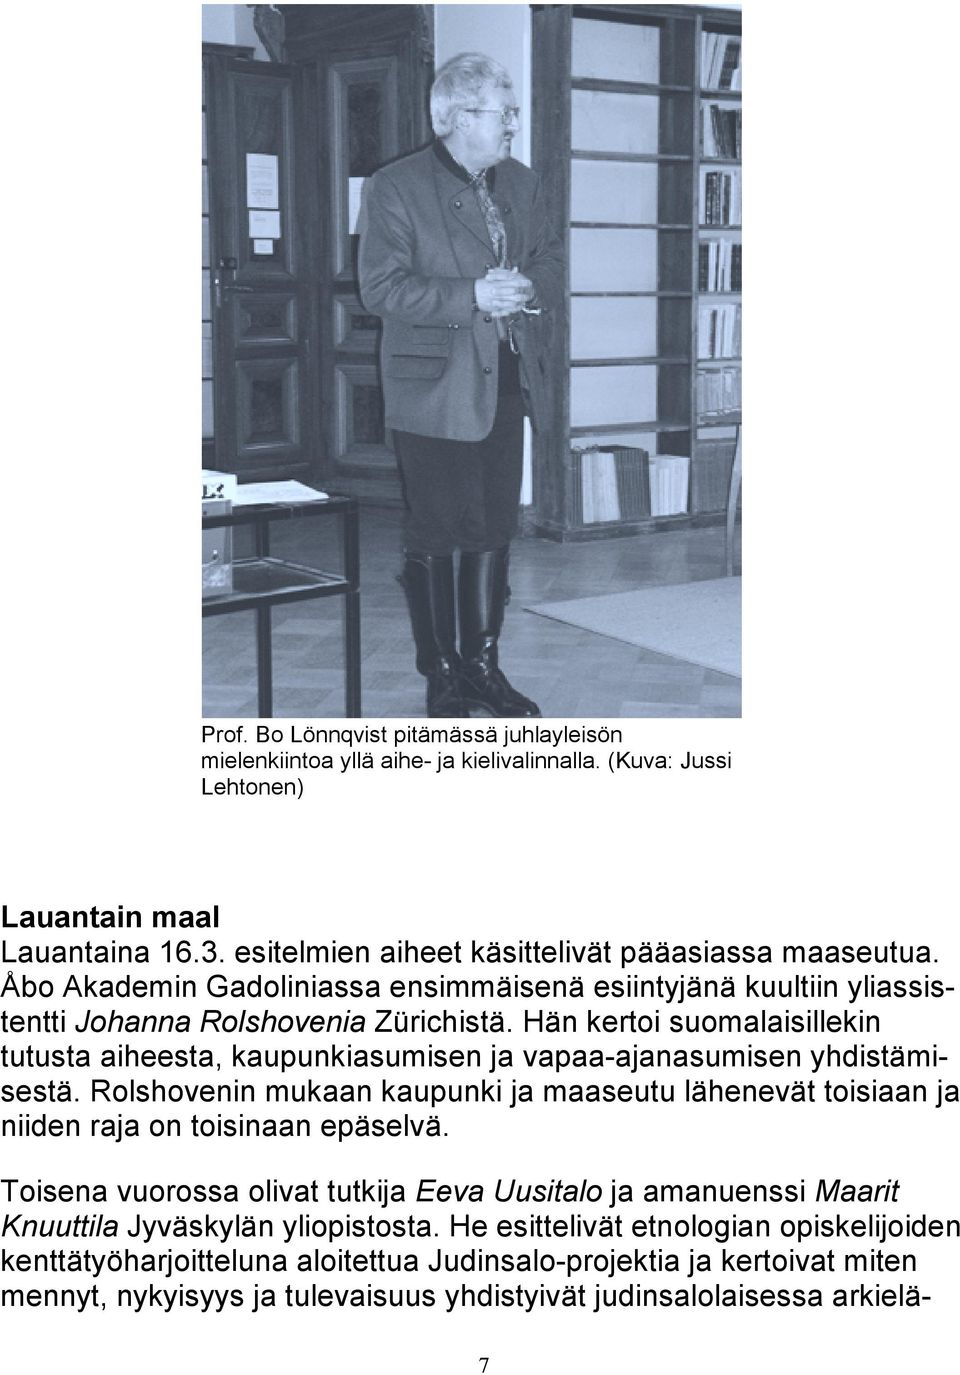 Hän kertoi suomalaisillekin tutusta aiheesta, kaupunkiasumisen ja vapaa-ajanasumisen yhdistämisestä. Rolshovenin mukaan kaupunki ja maaseutu lähenevät toisiaan ja niiden raja on toisinaan epäselvä.